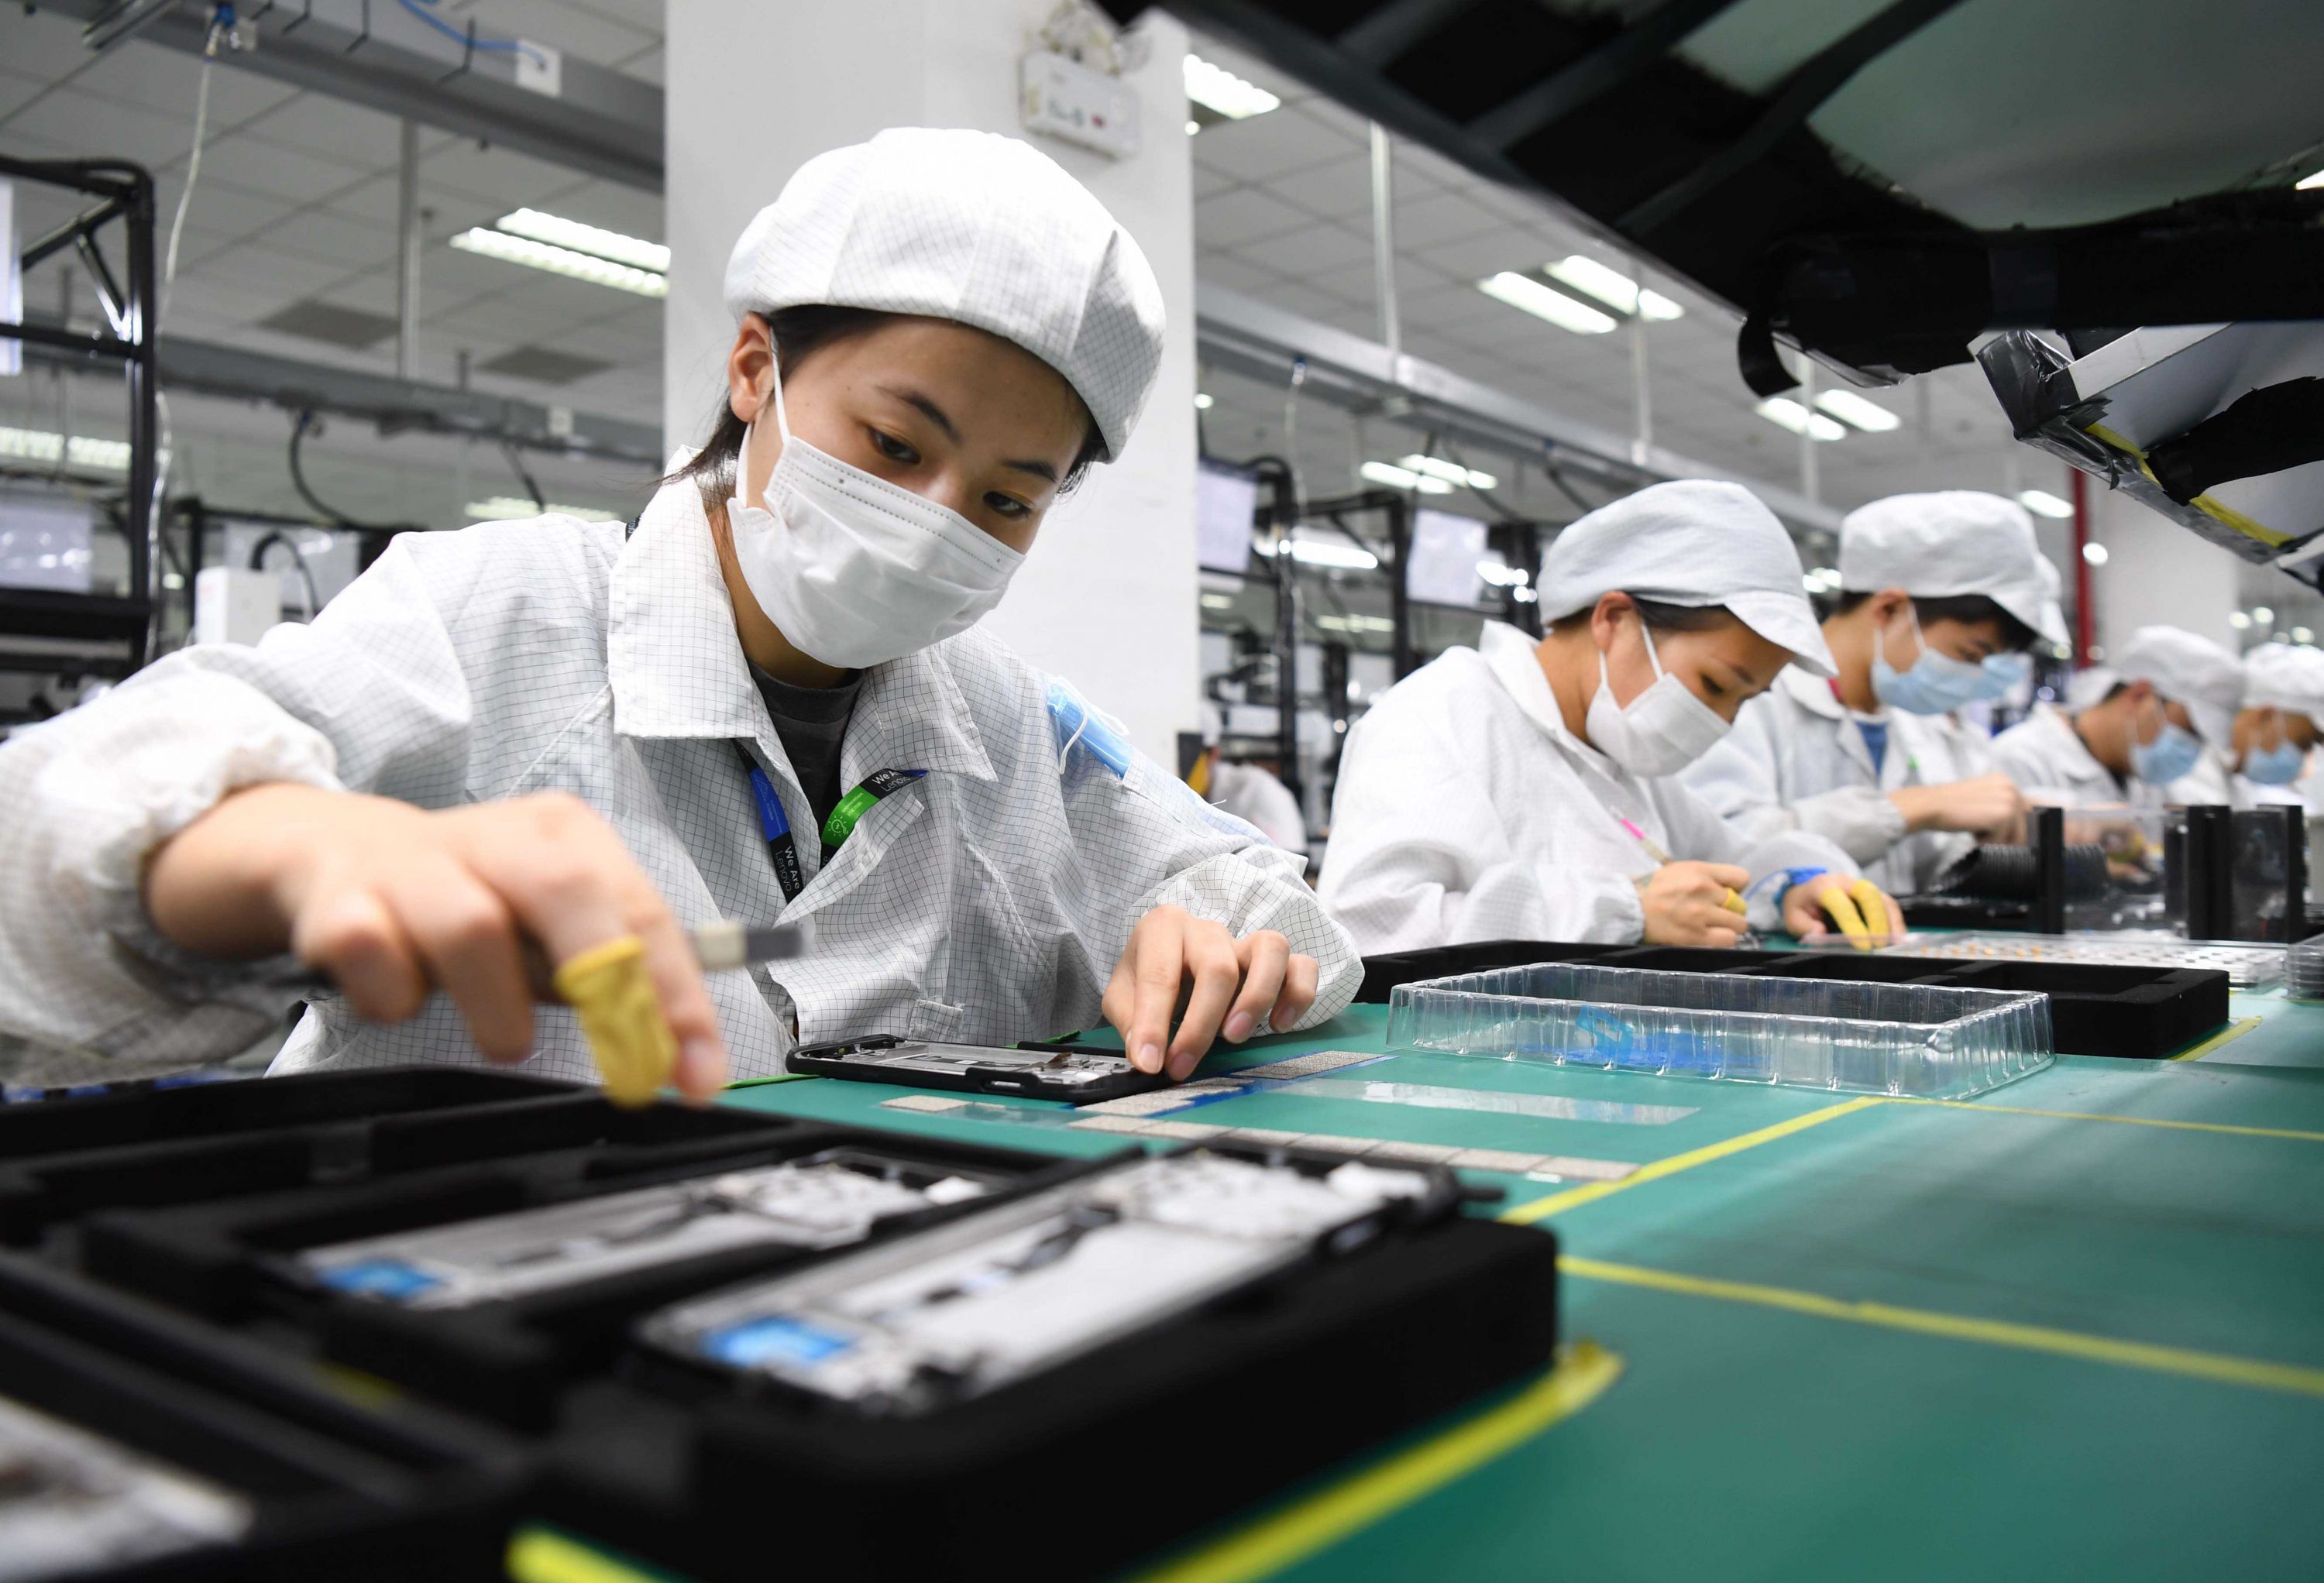 格力在汉建最智慧,自动化程度最高的工厂武汉基地成为联想移动终端